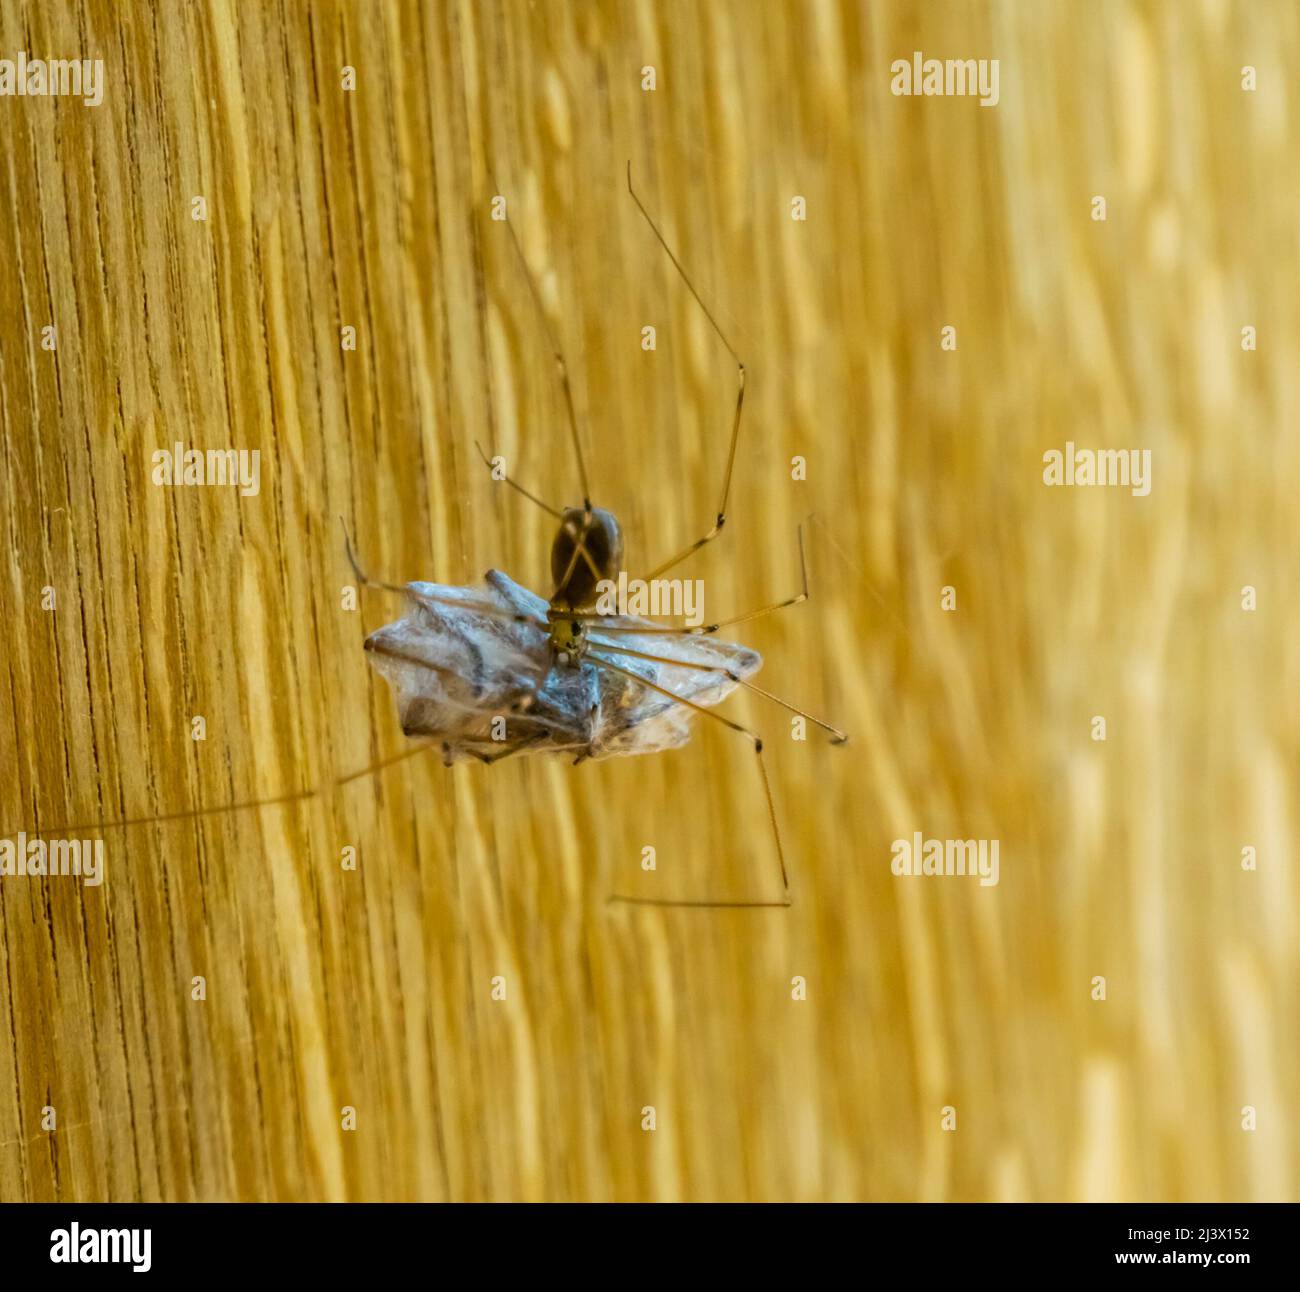 Nahaufnahme einer langbeinigen Kellerspinne, die eine weitere Spinne in Seide umhüllt, fleischfressende Insekten, die sich zum Kannibalismus wenden können, gewöhnliche Hausspinne specie i Stockfoto